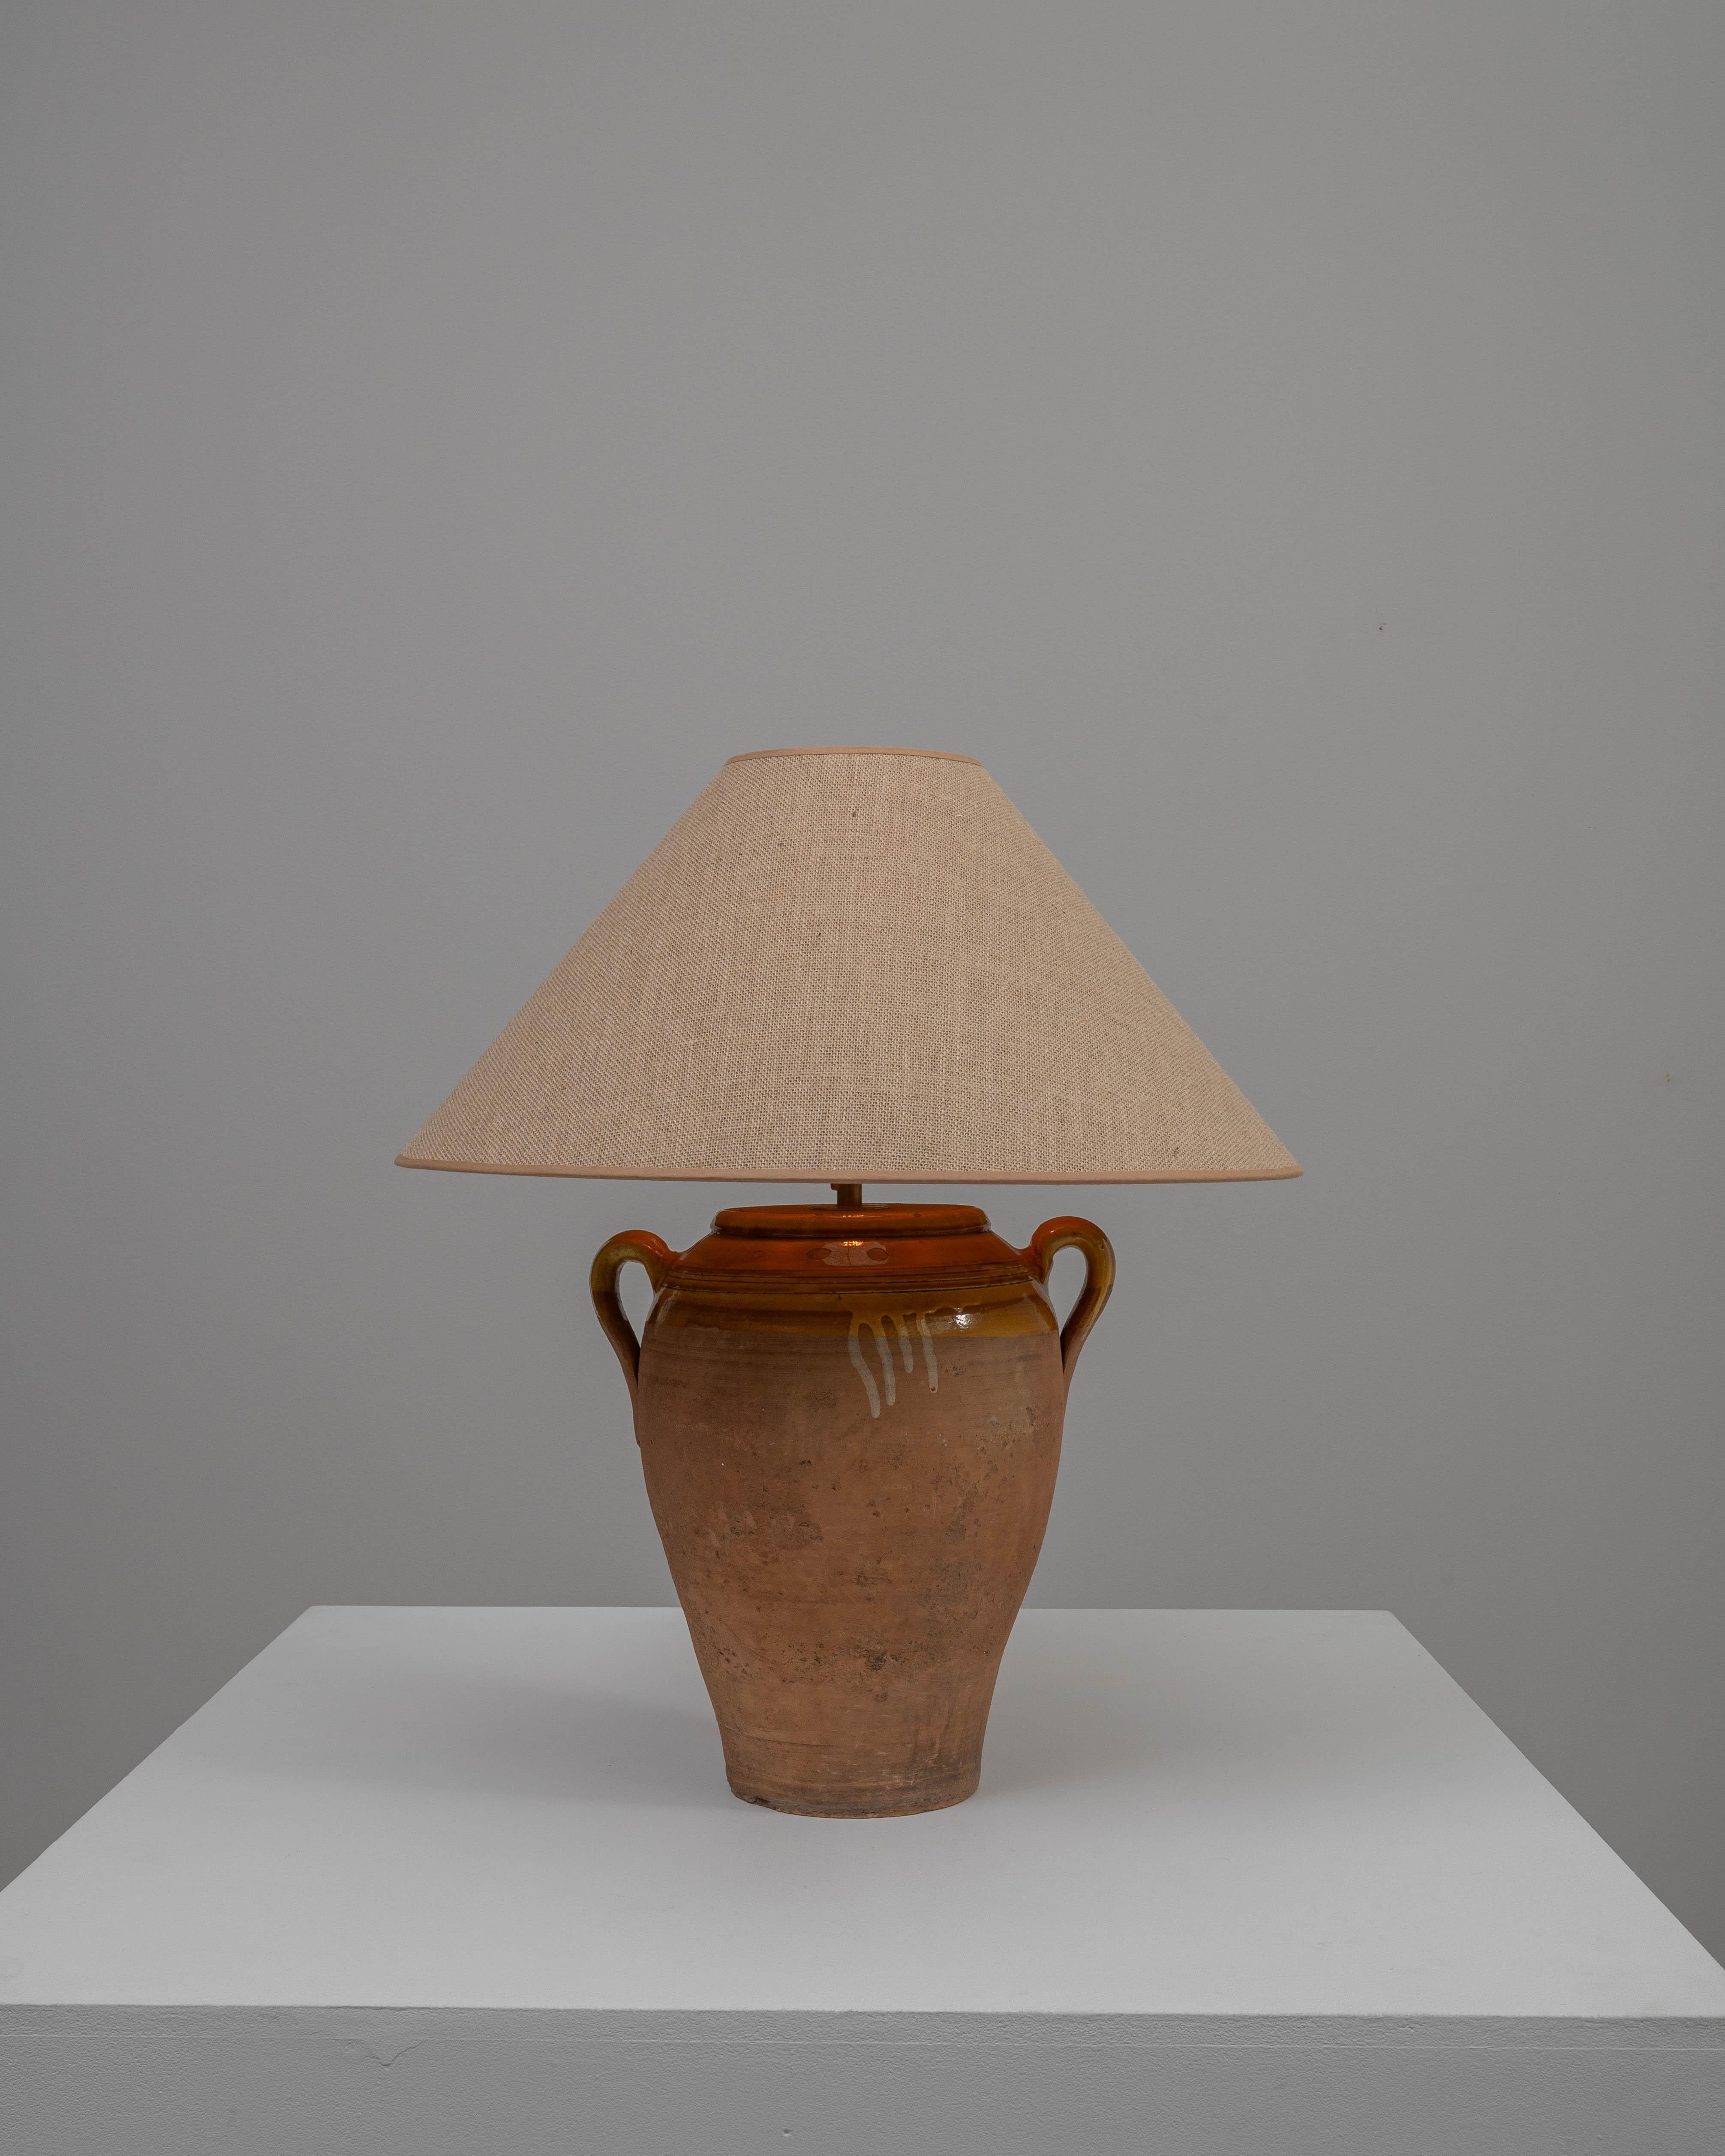 Cette lampe à poser en céramique allemande du XXe siècle dégage un certain charme provincial avec son style poterie antique. La base en céramique de couleur terre cuite, qui rappelle une amphore utilisée dans l'Antiquité, présente une patine